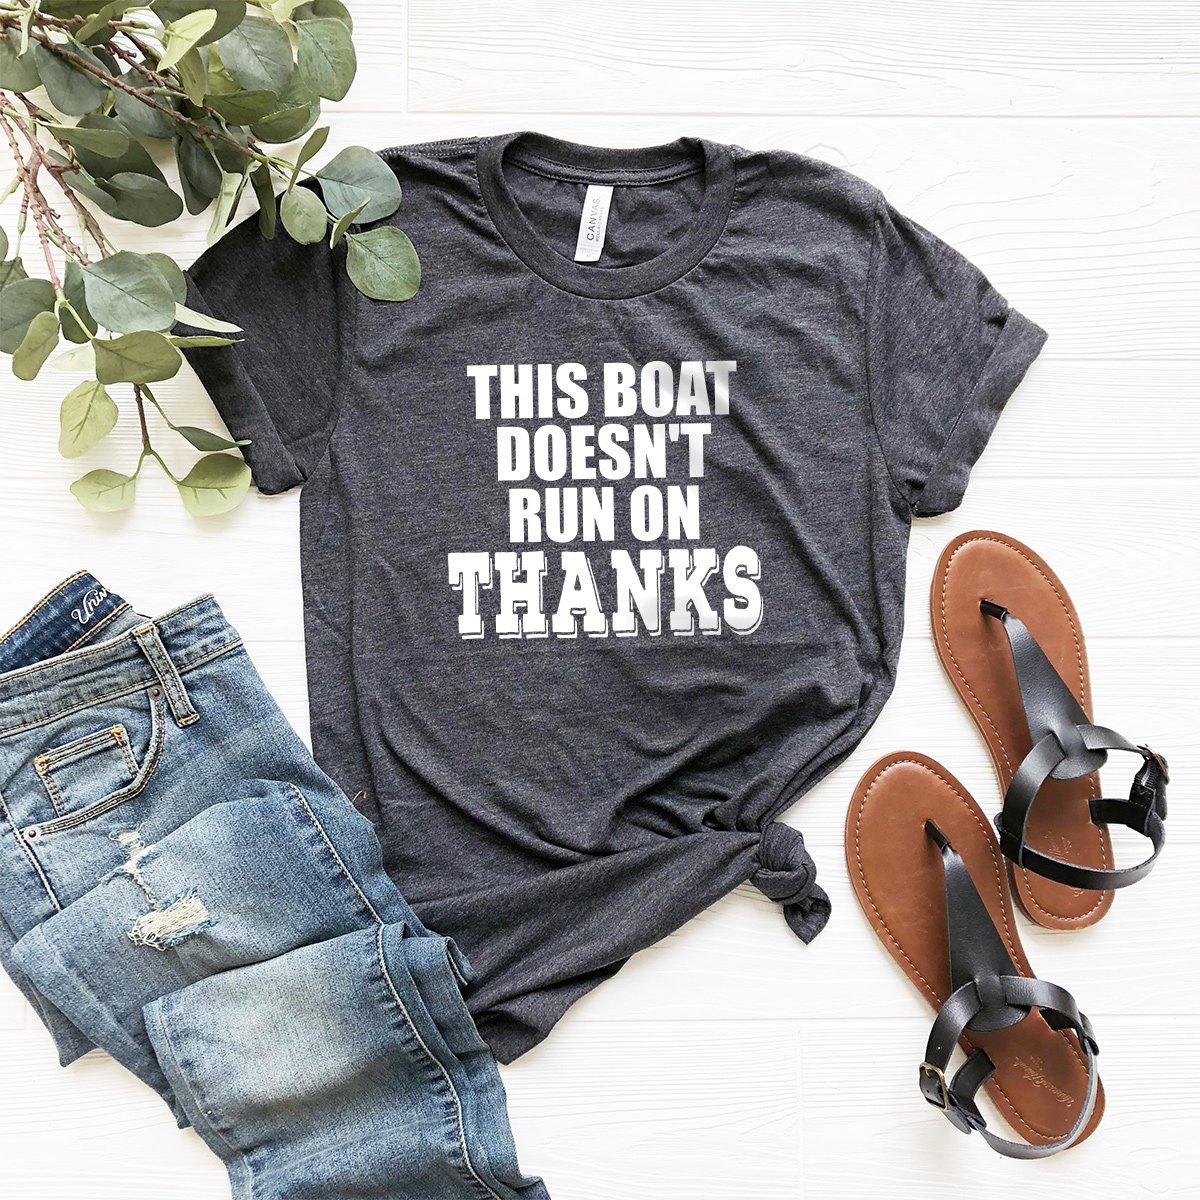 Boating Shirt,Funny Boating Shirt,Sailing Shirt,Boat Owner,Lake Gift,My Boat Doesn't Run Shirt,Lake Shirt,Boat Gift,Boating Gift,Lake Shirt - Fastdeliverytees.com